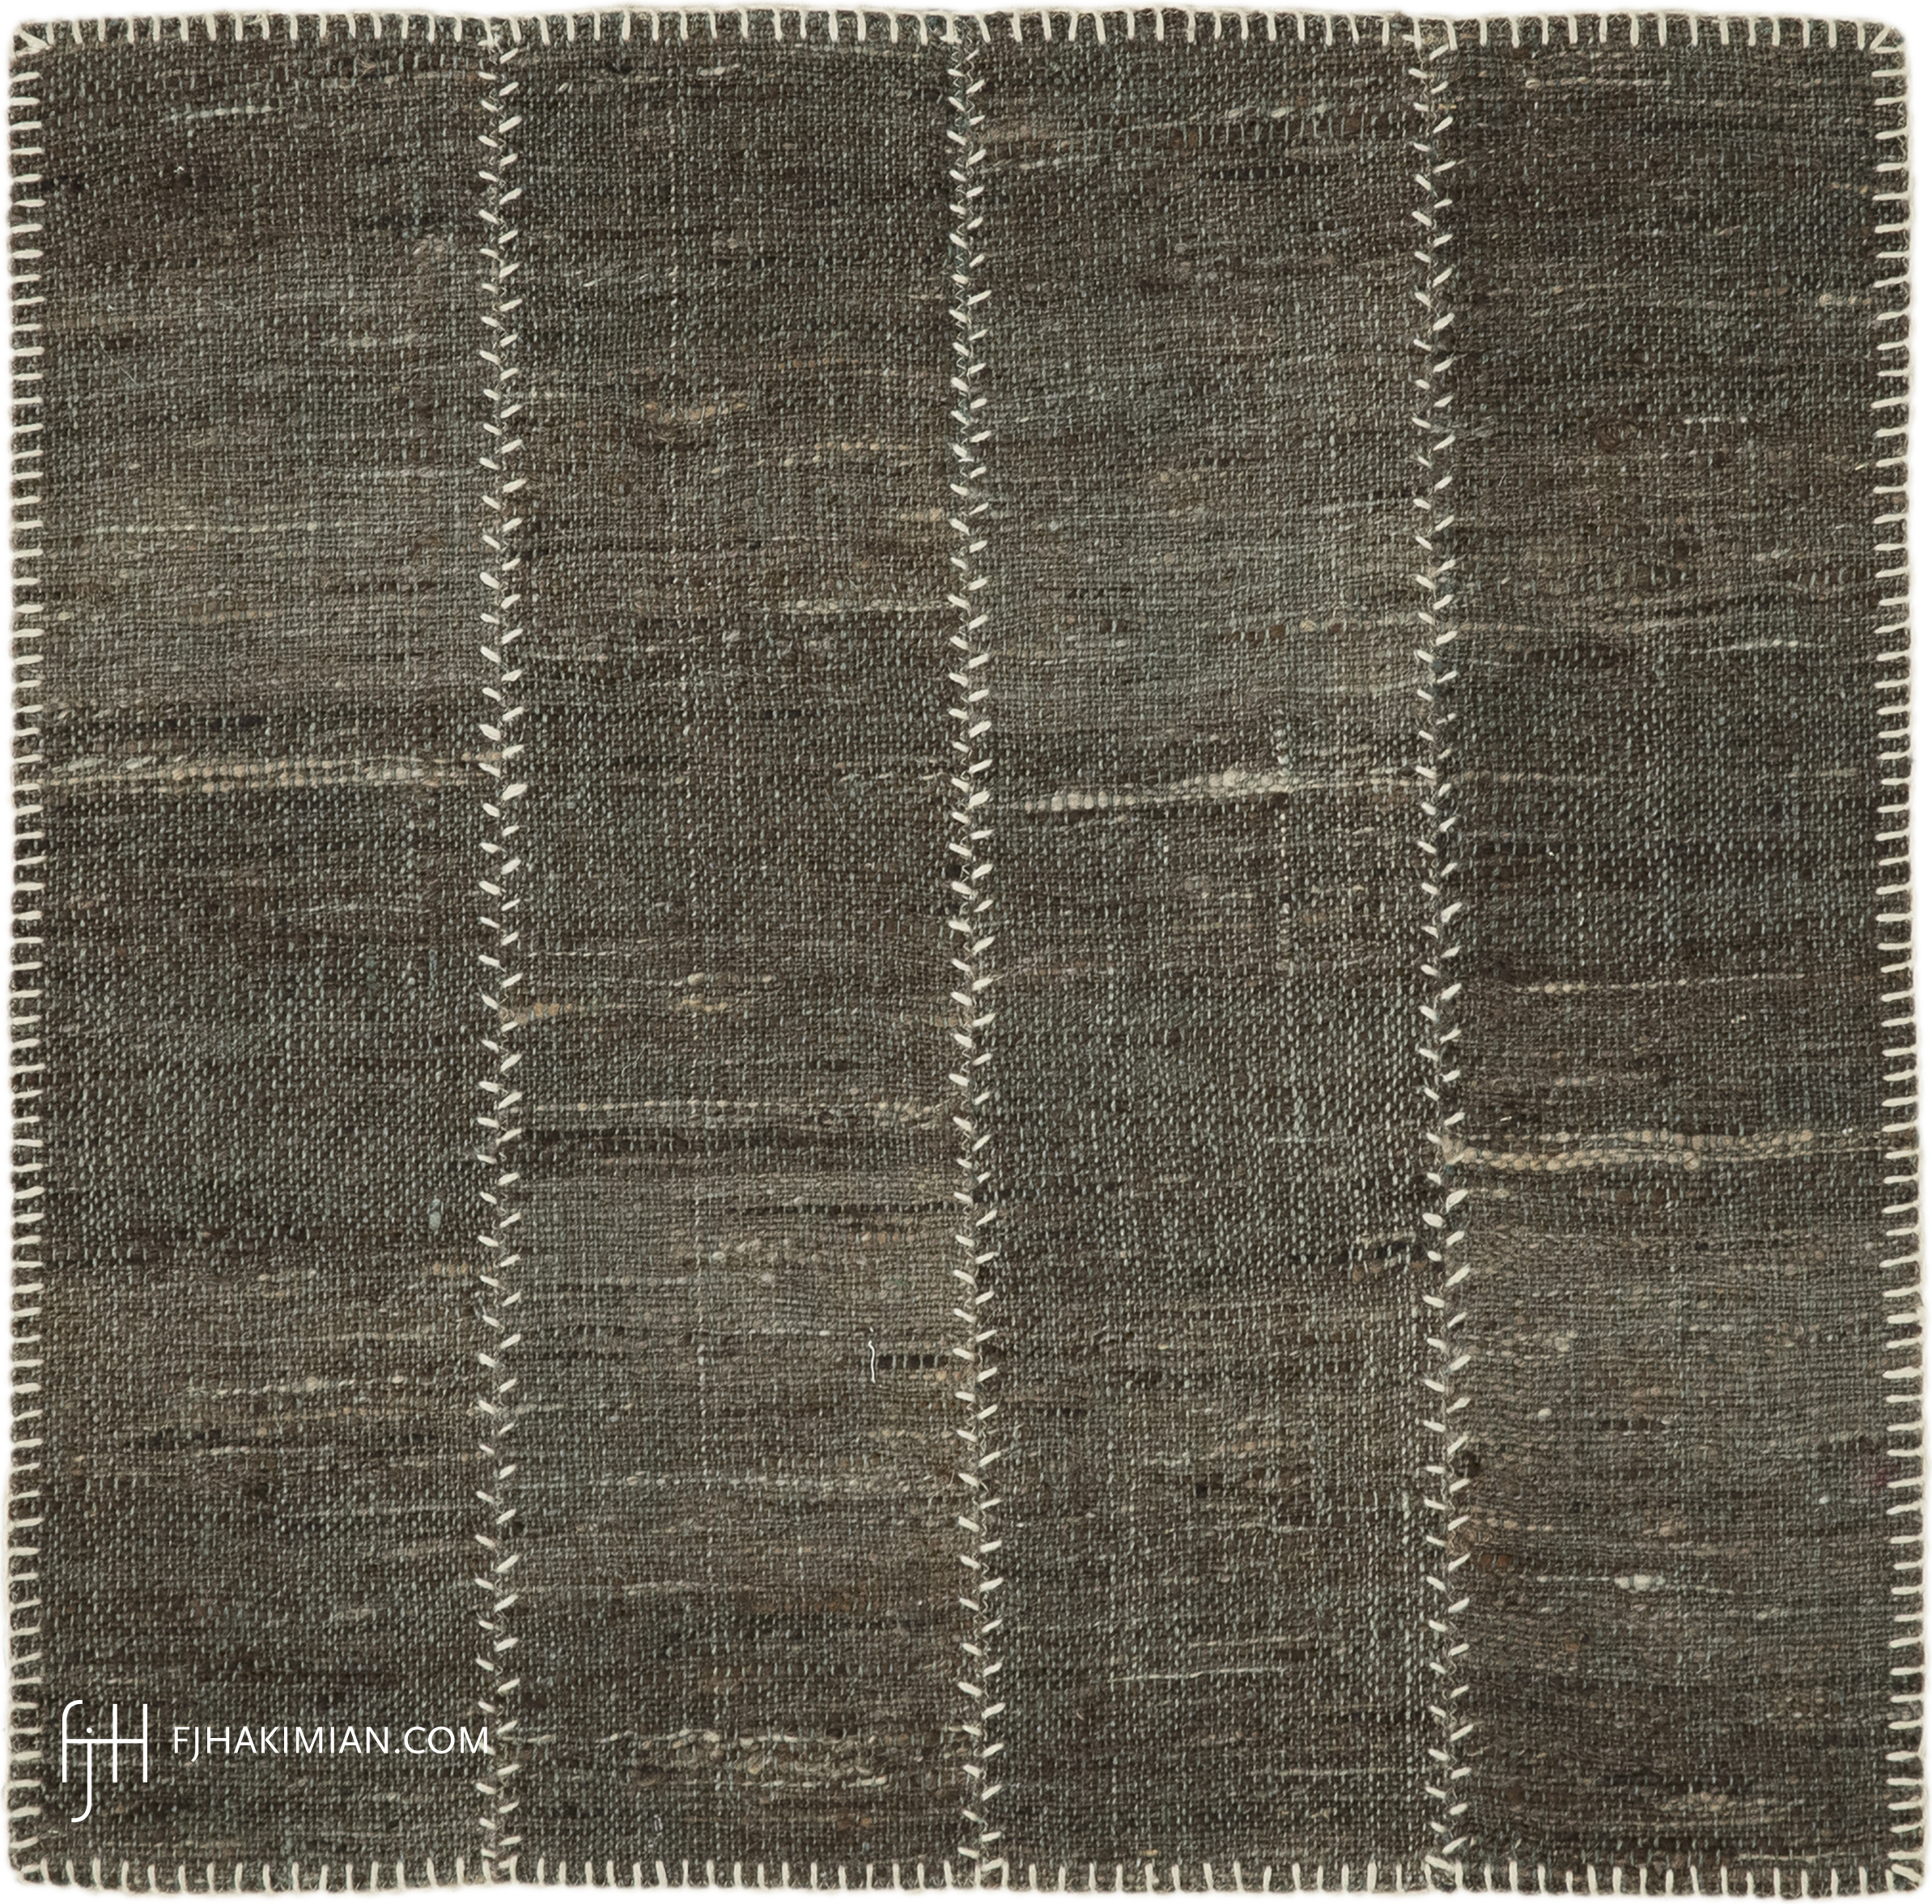 FJ Hakimian | 47410 | Custom Carpet